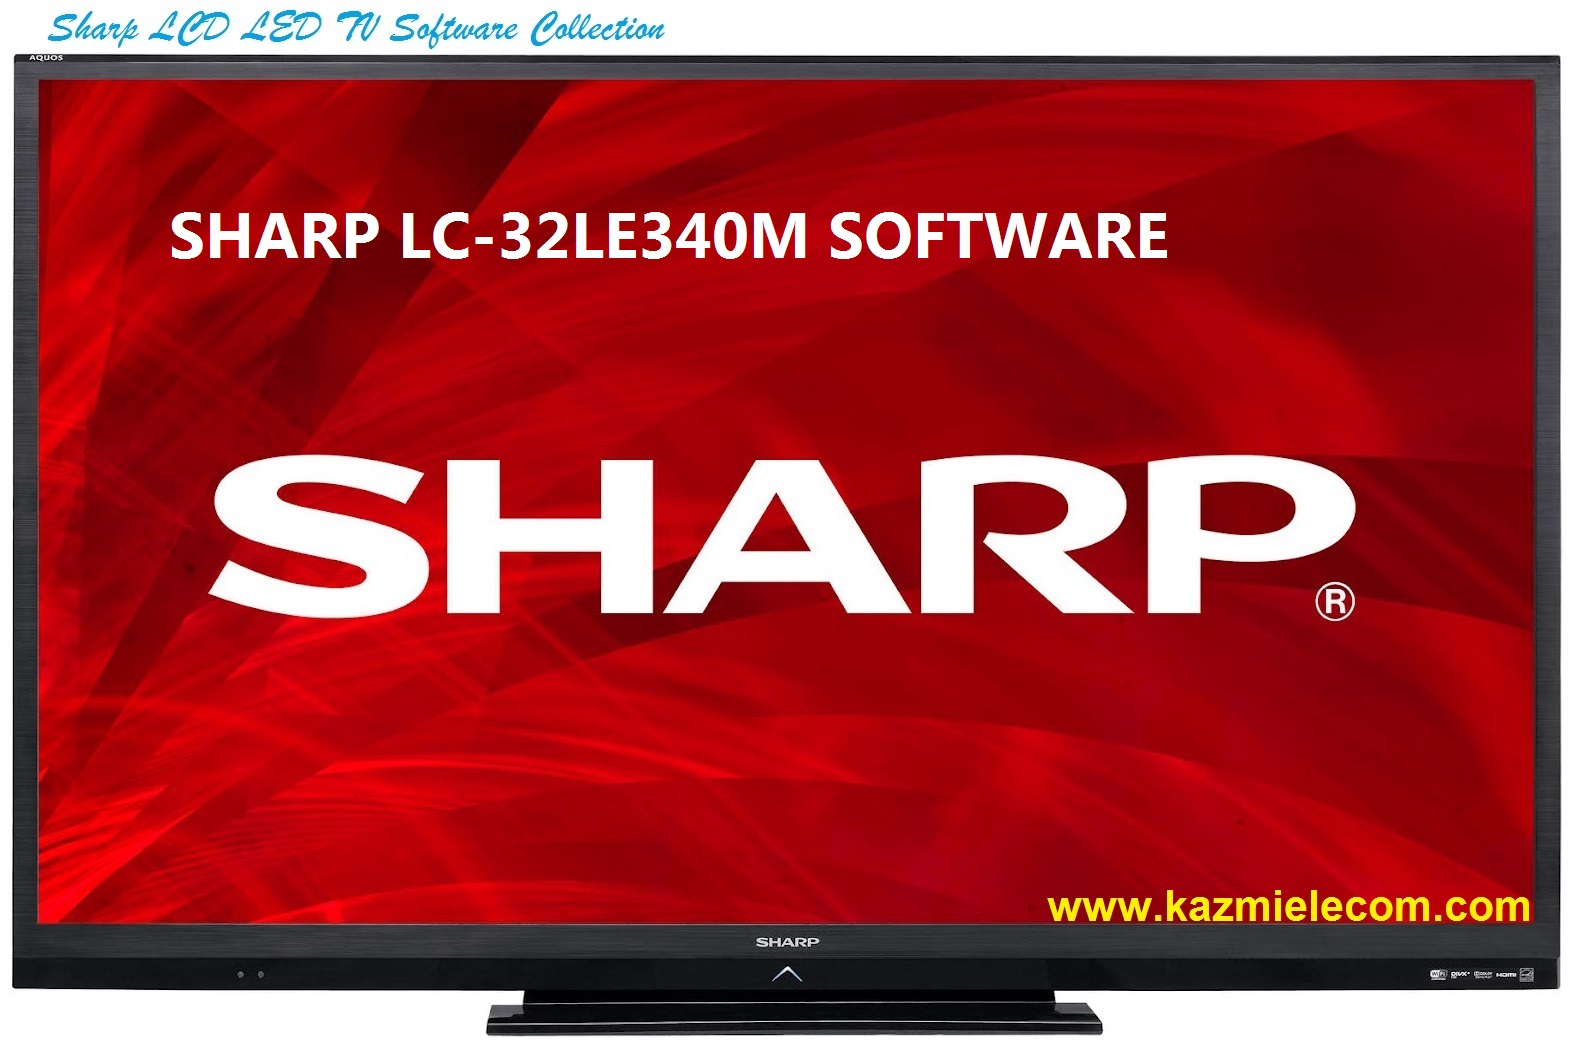 Sharp Lc-32Le340M